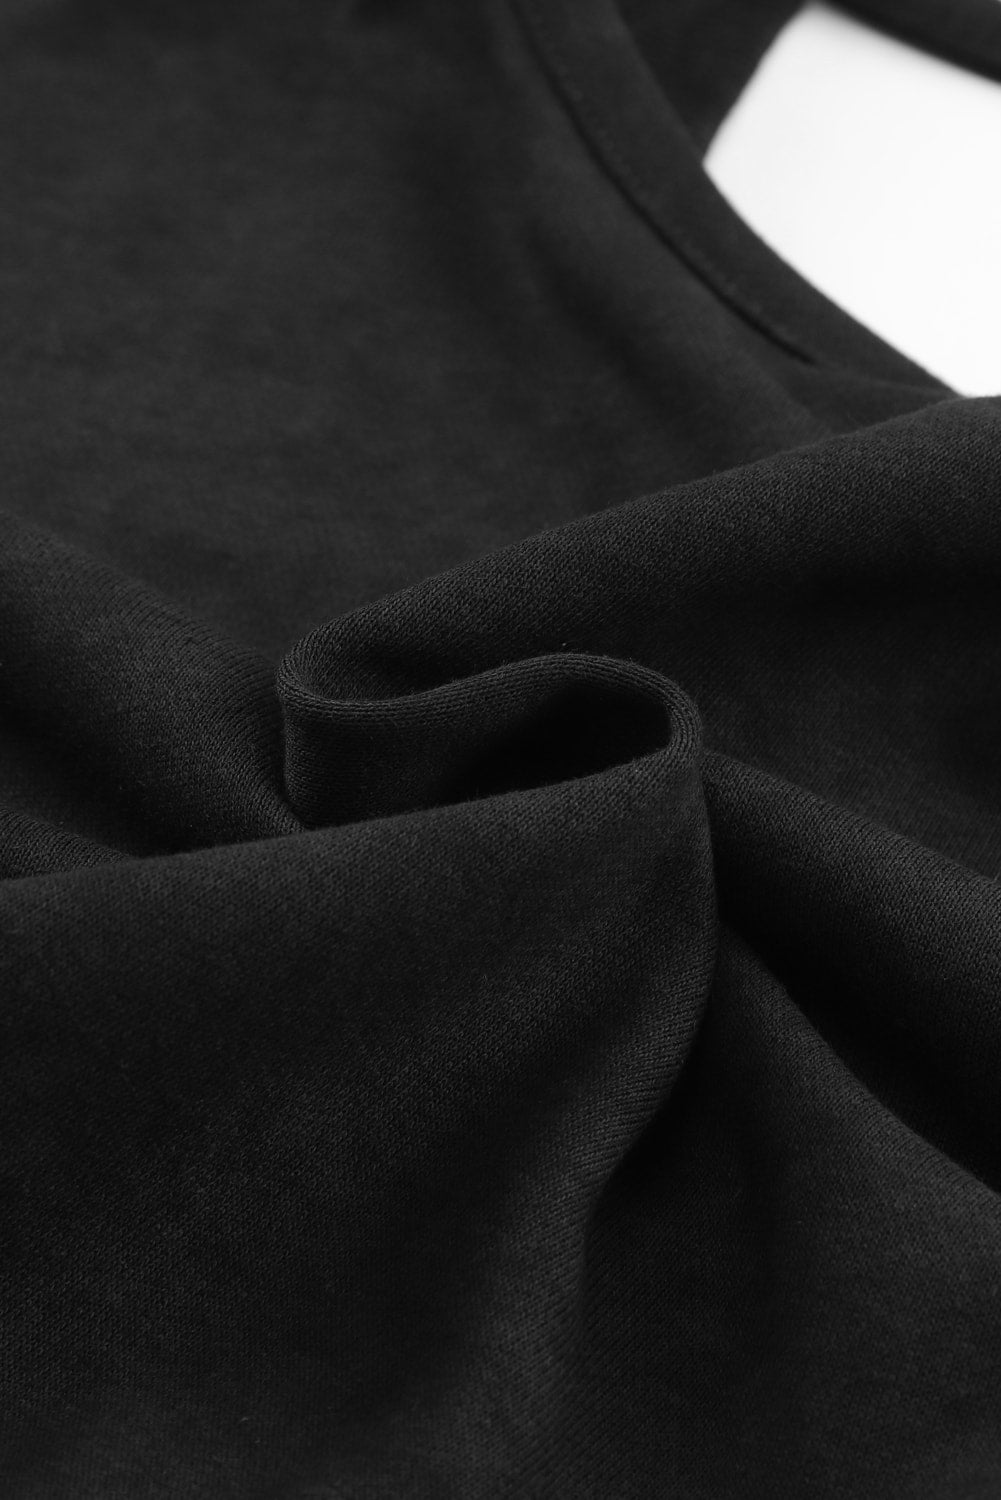 Rose Acid Wash V-shape Open Back Sweatshirt